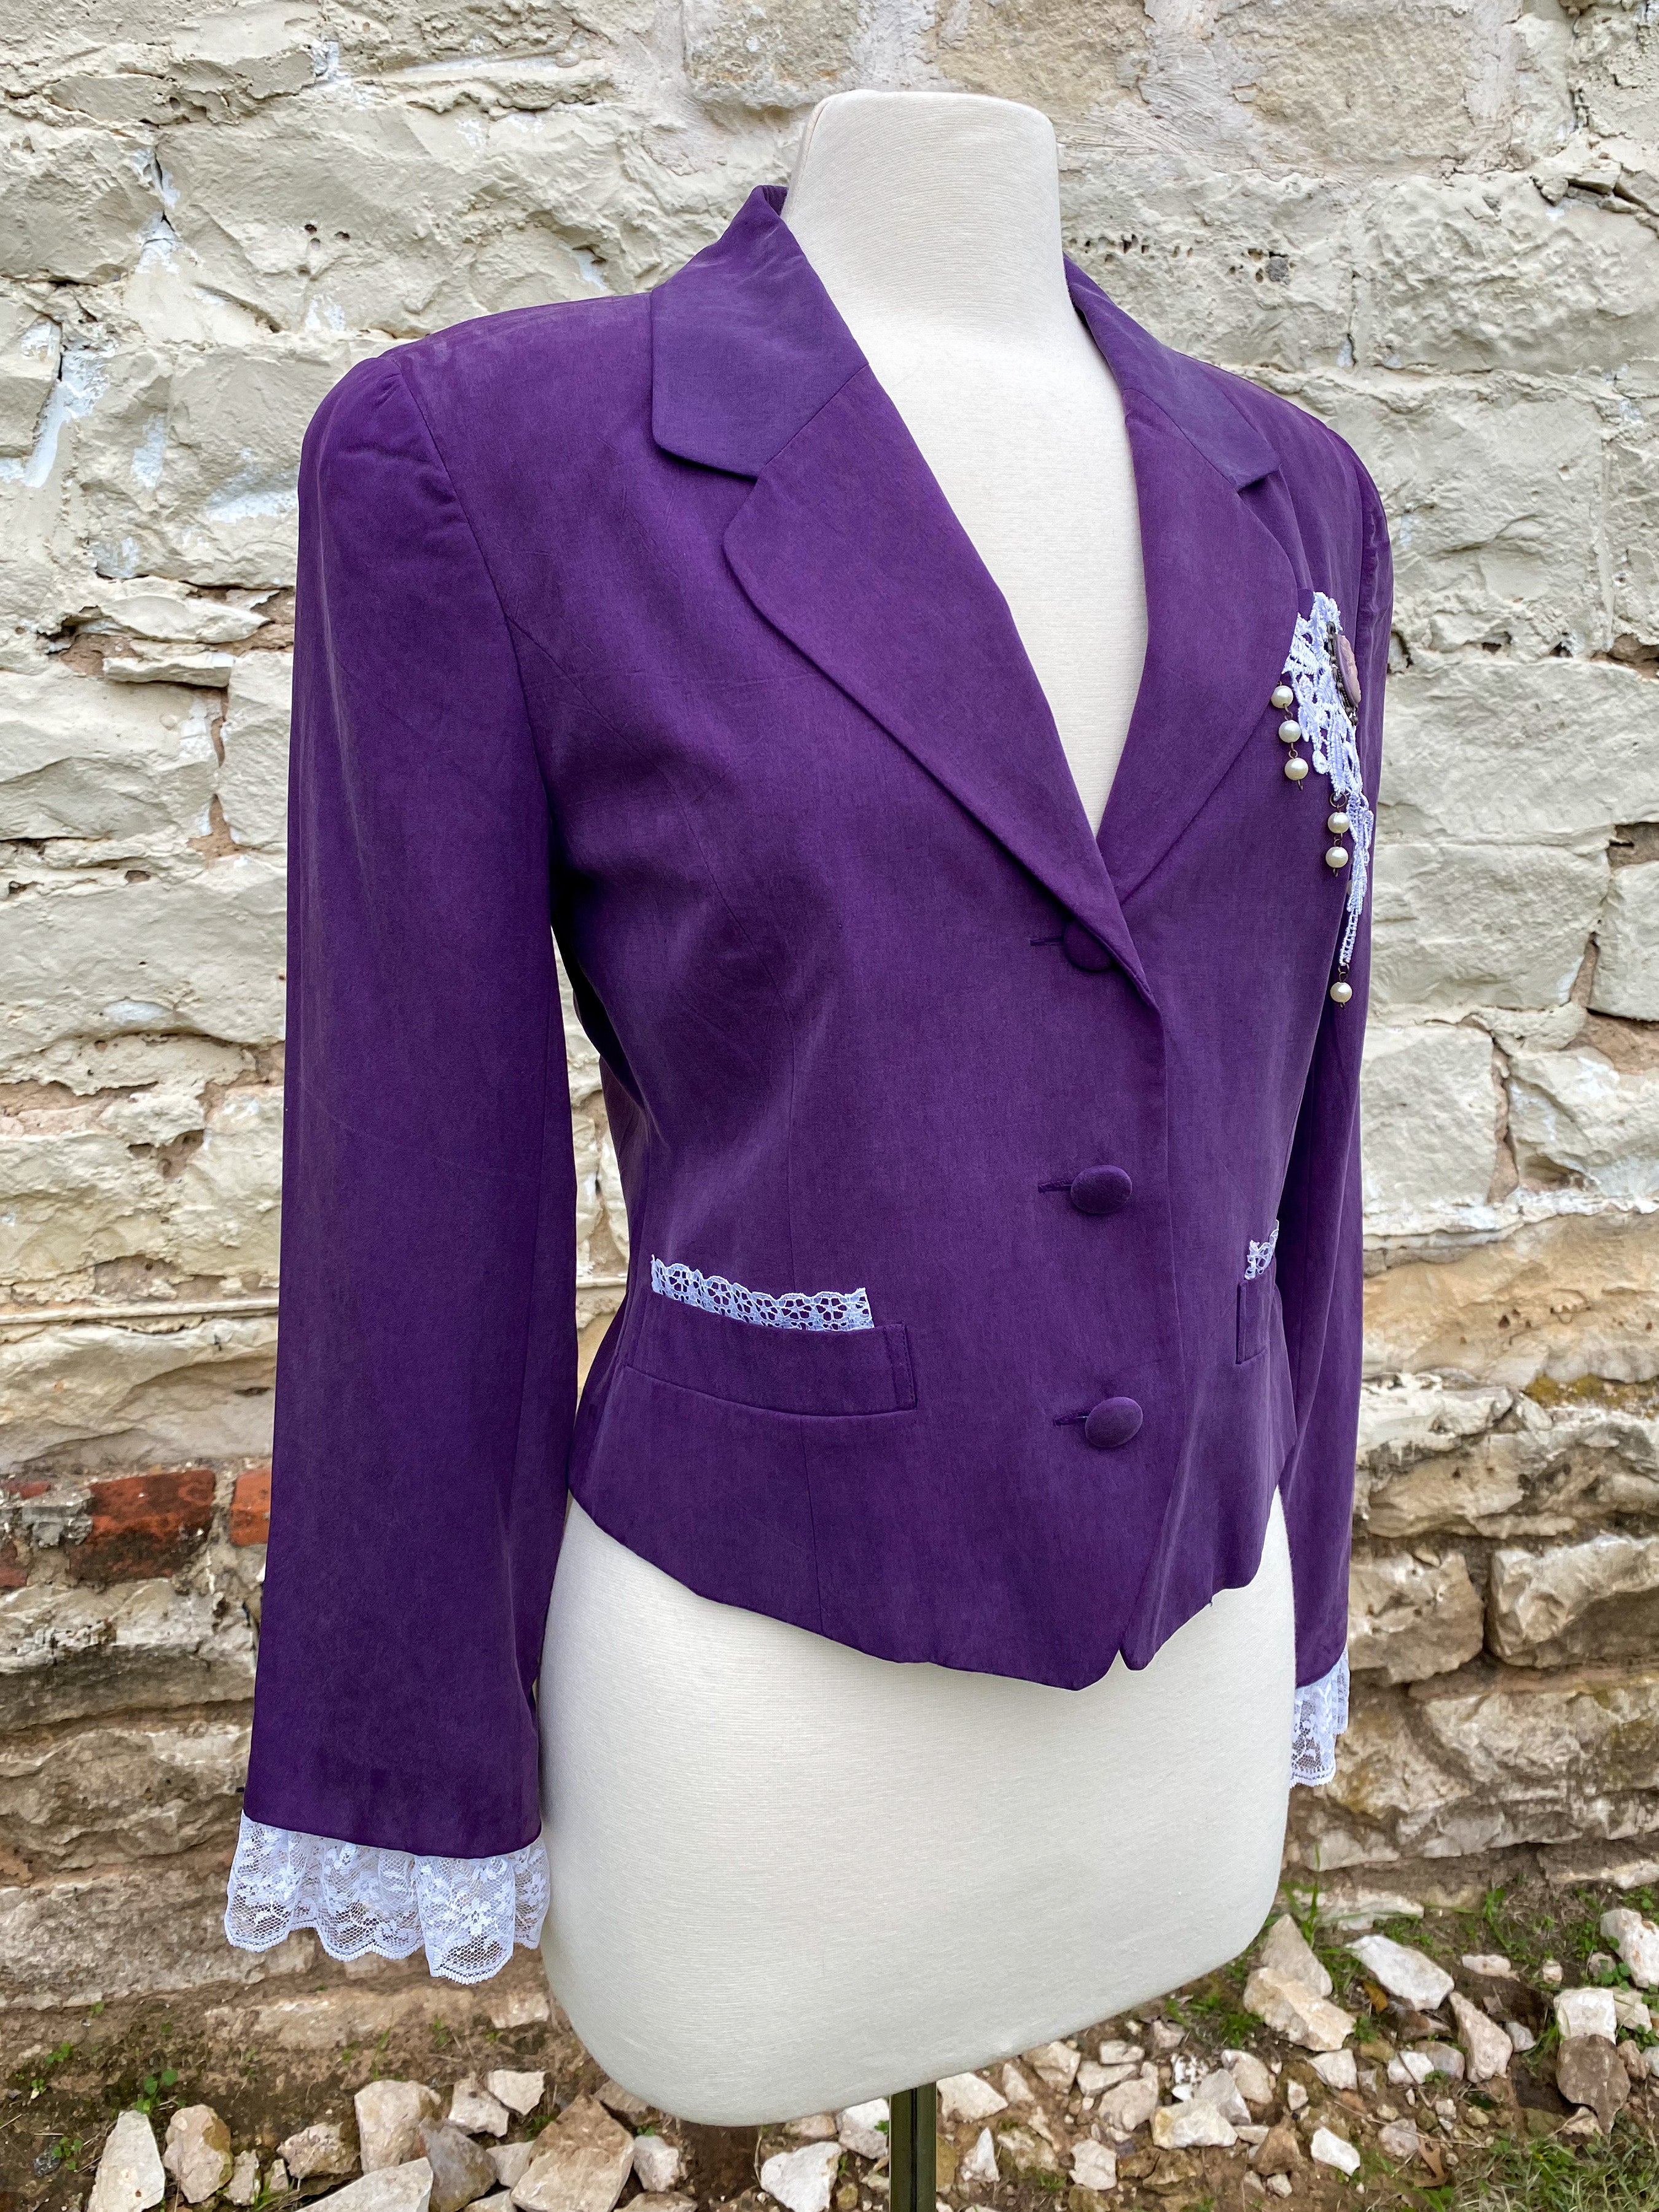 Short Purple Jacket with Brooch -Medium